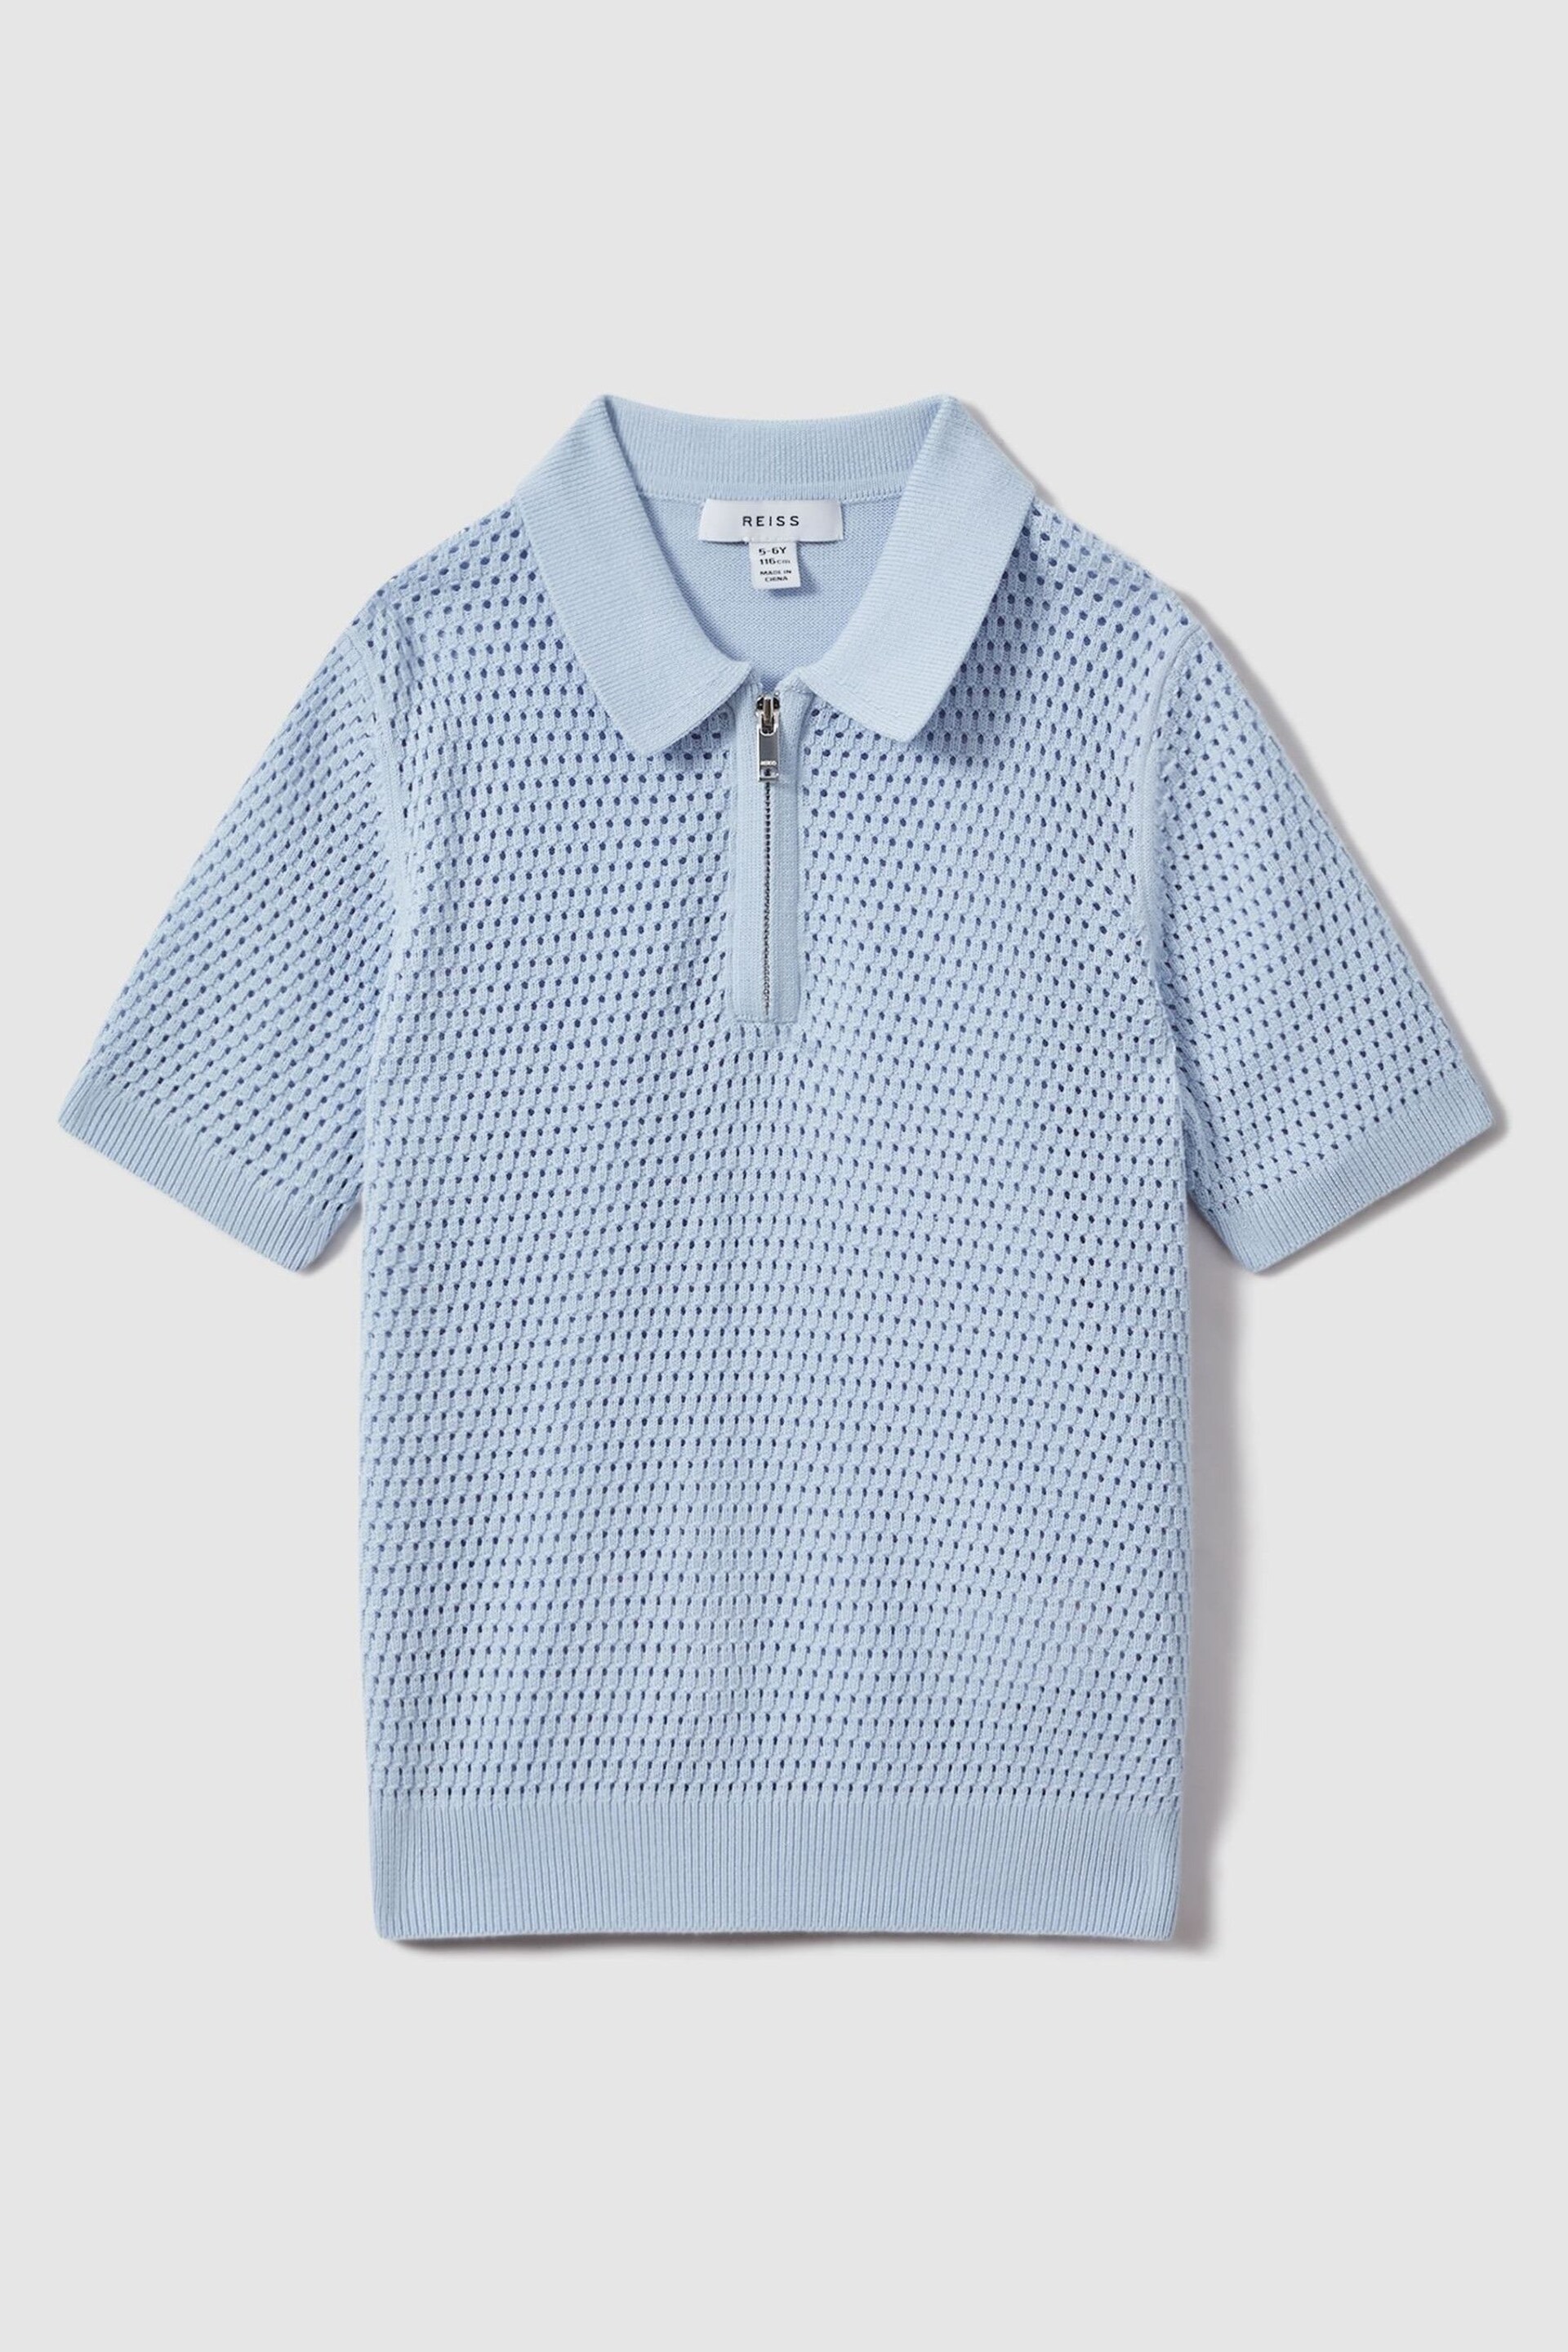 Reiss Soft Blue Burnham Teen Textured Half-Zip Polo T-Shirt - Image 1 of 4